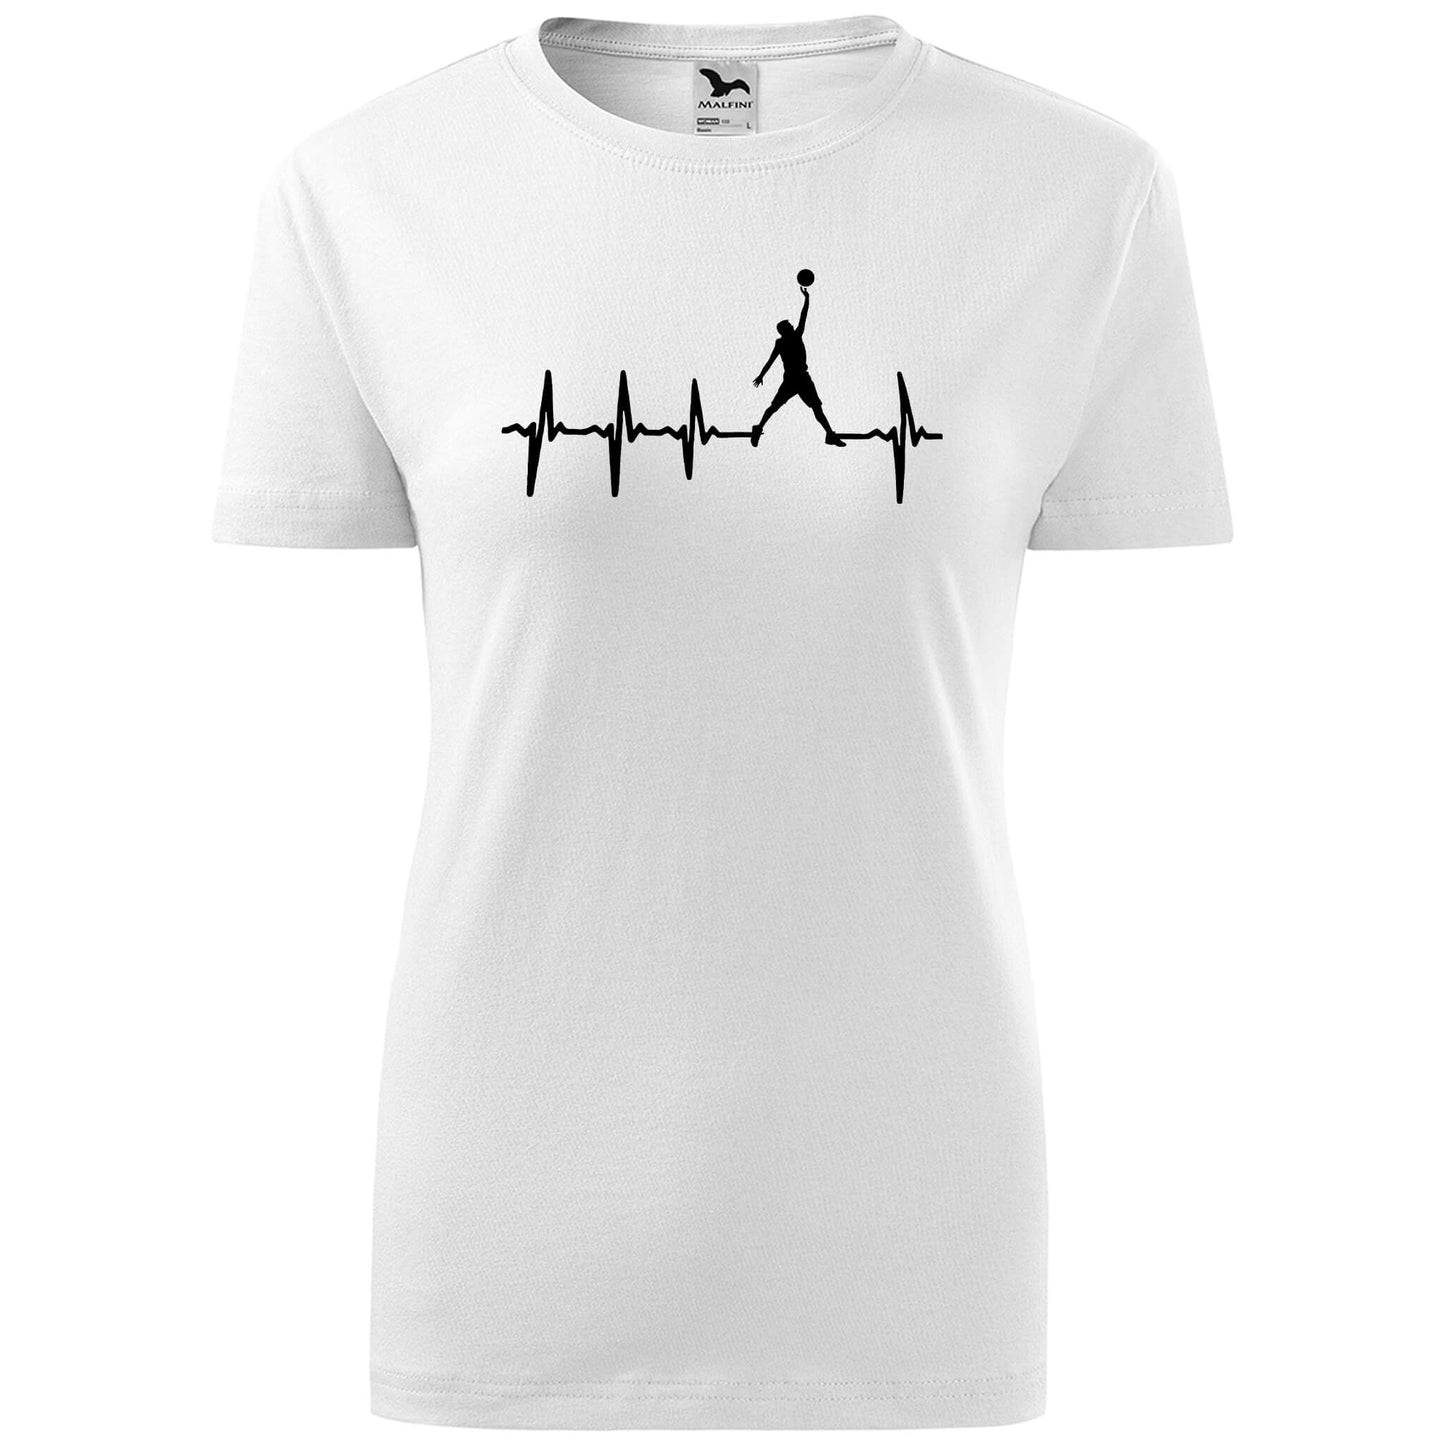 T-shirt - EKG - Basketball - rvdesignprint